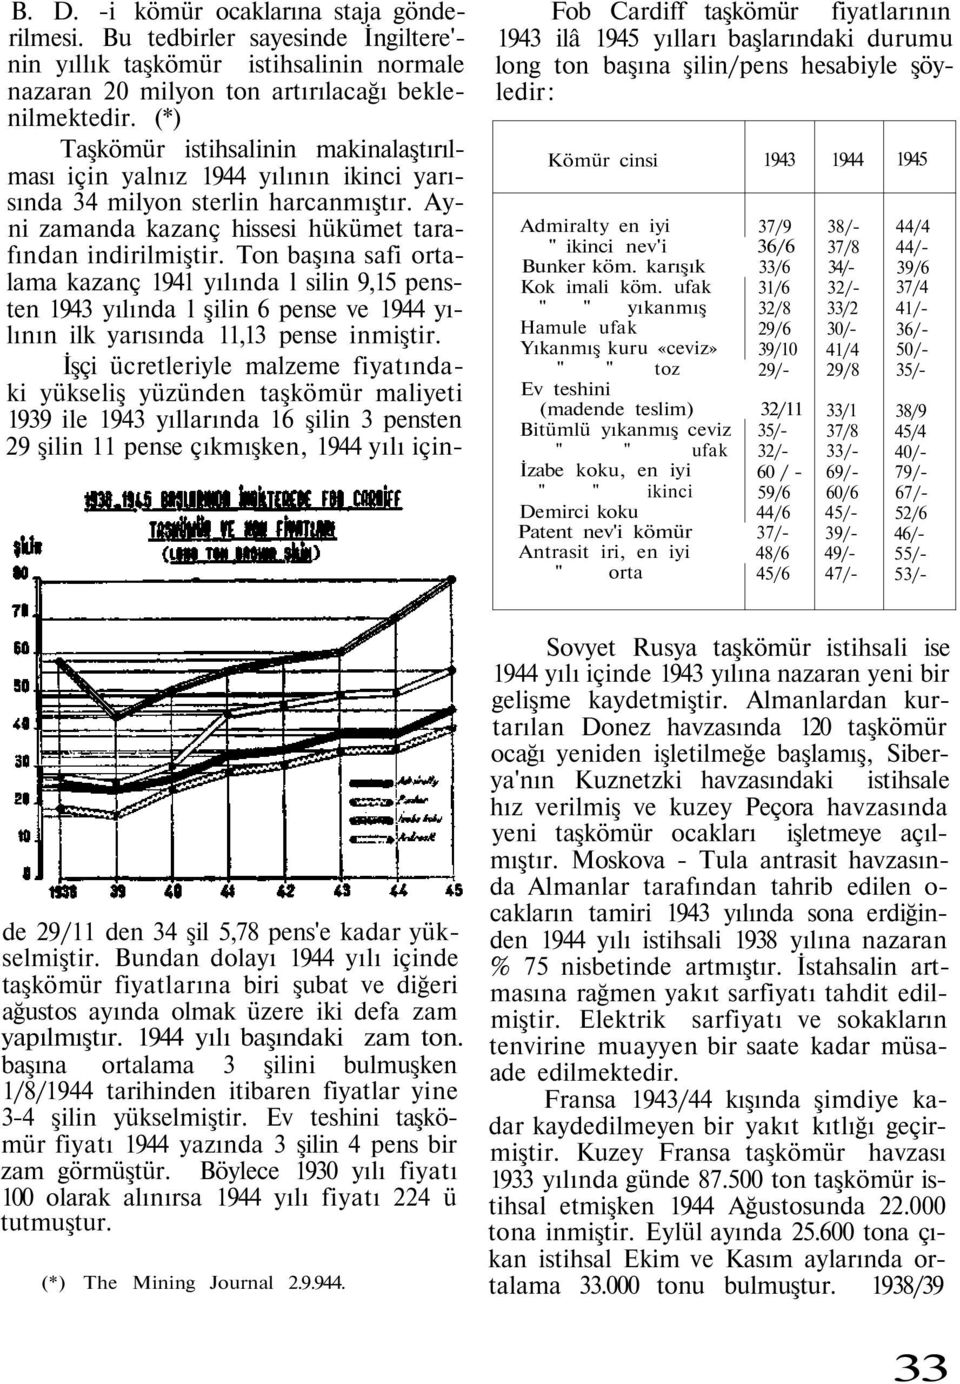 Ton başına safi ortalama kazanç 1941 yılında l silin 9,15 pensten 1943 yılında l şilin 6 pense ve 1944 yılının ilk yarısında 11,13 pense inmiştir.